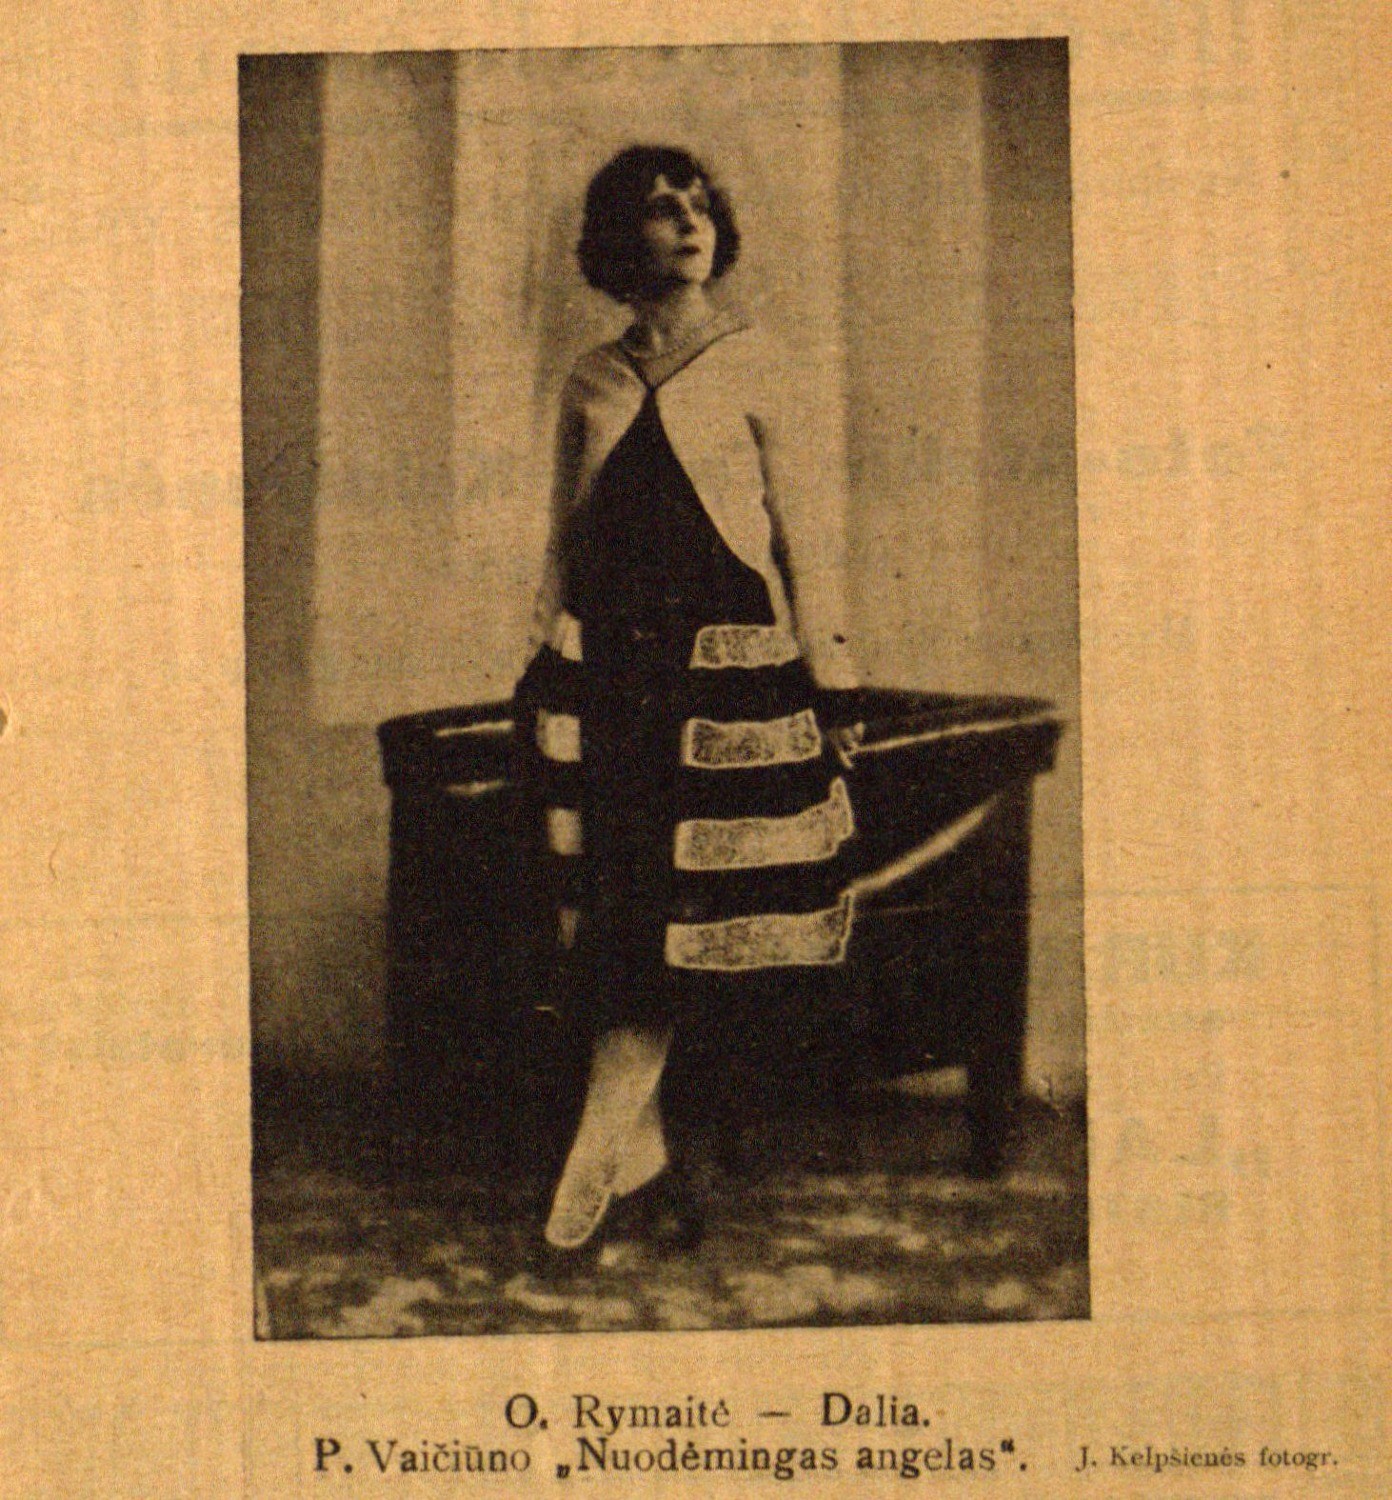 O. Rymaitė – Dalia. P. Vaičiūno „Nuodėmingas angelas“: J. Kelpšienės fotogr. // 7 meno dienos. – 1928, Nr. 10, p. 3